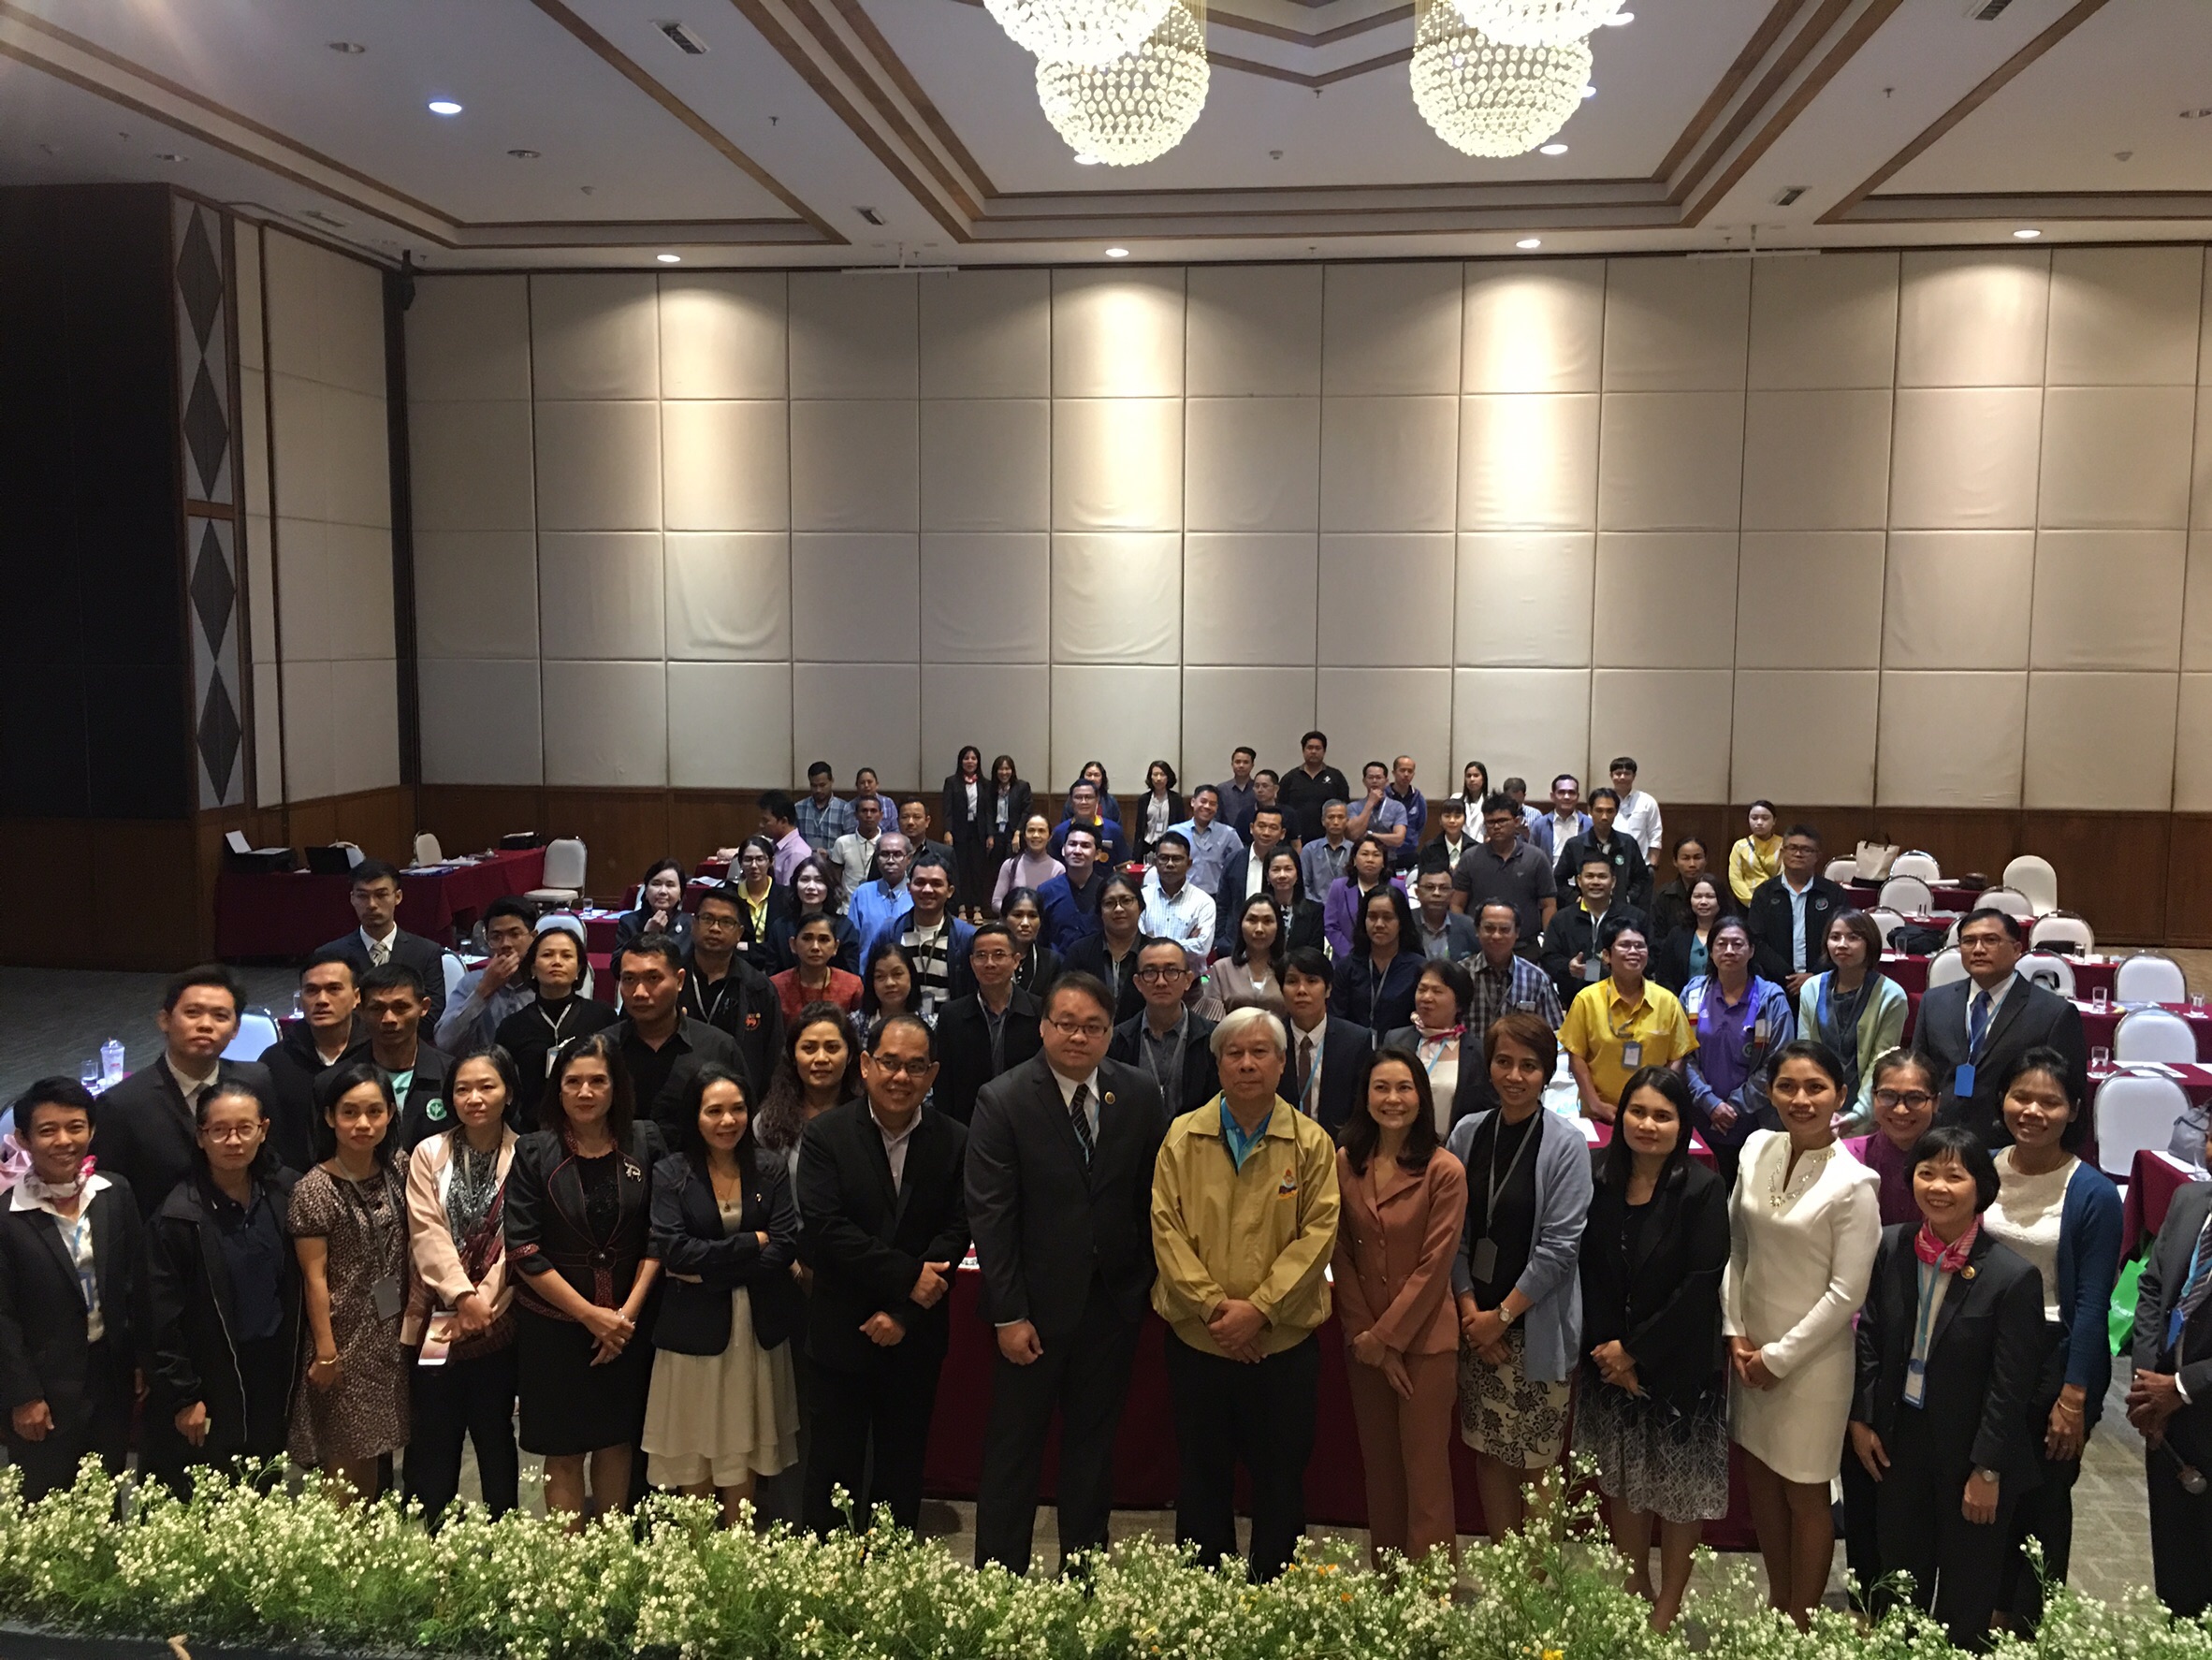 ประชุมวิชาการร่วมกับรังสีการแพทย์แห่งประเทศไทย ครั้งที่17 27-29 พ.ย. - พร้อมเข้าเยี่ยมและให้กำลังใจหน่วยงานรังสีวิทยาในพื้นที่จังหวัดอุบลราชธานีระหว่างวันที่ 25-26 พฤศจิกายน 2562 18